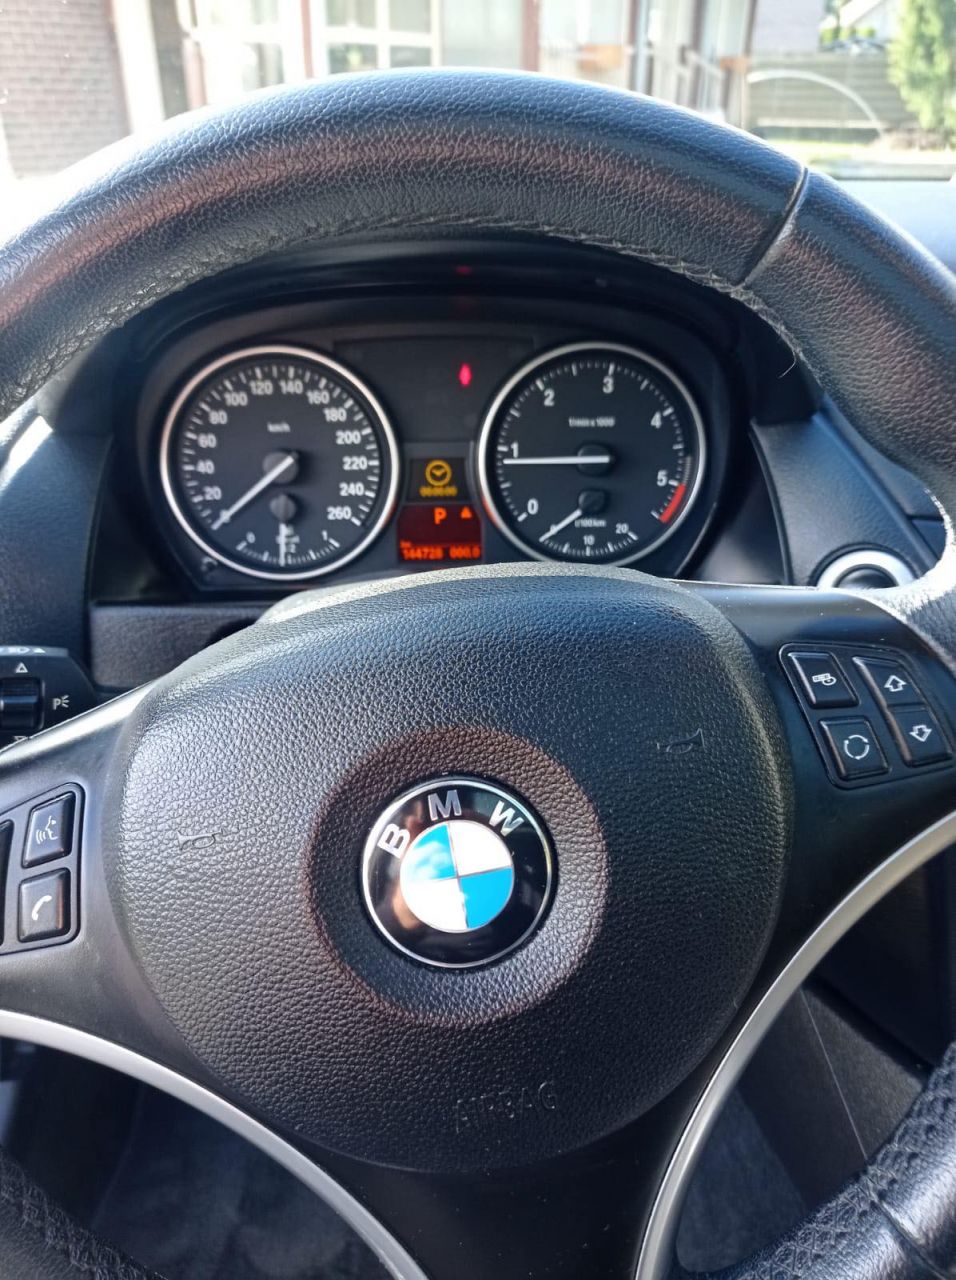 BMW X1 | 3